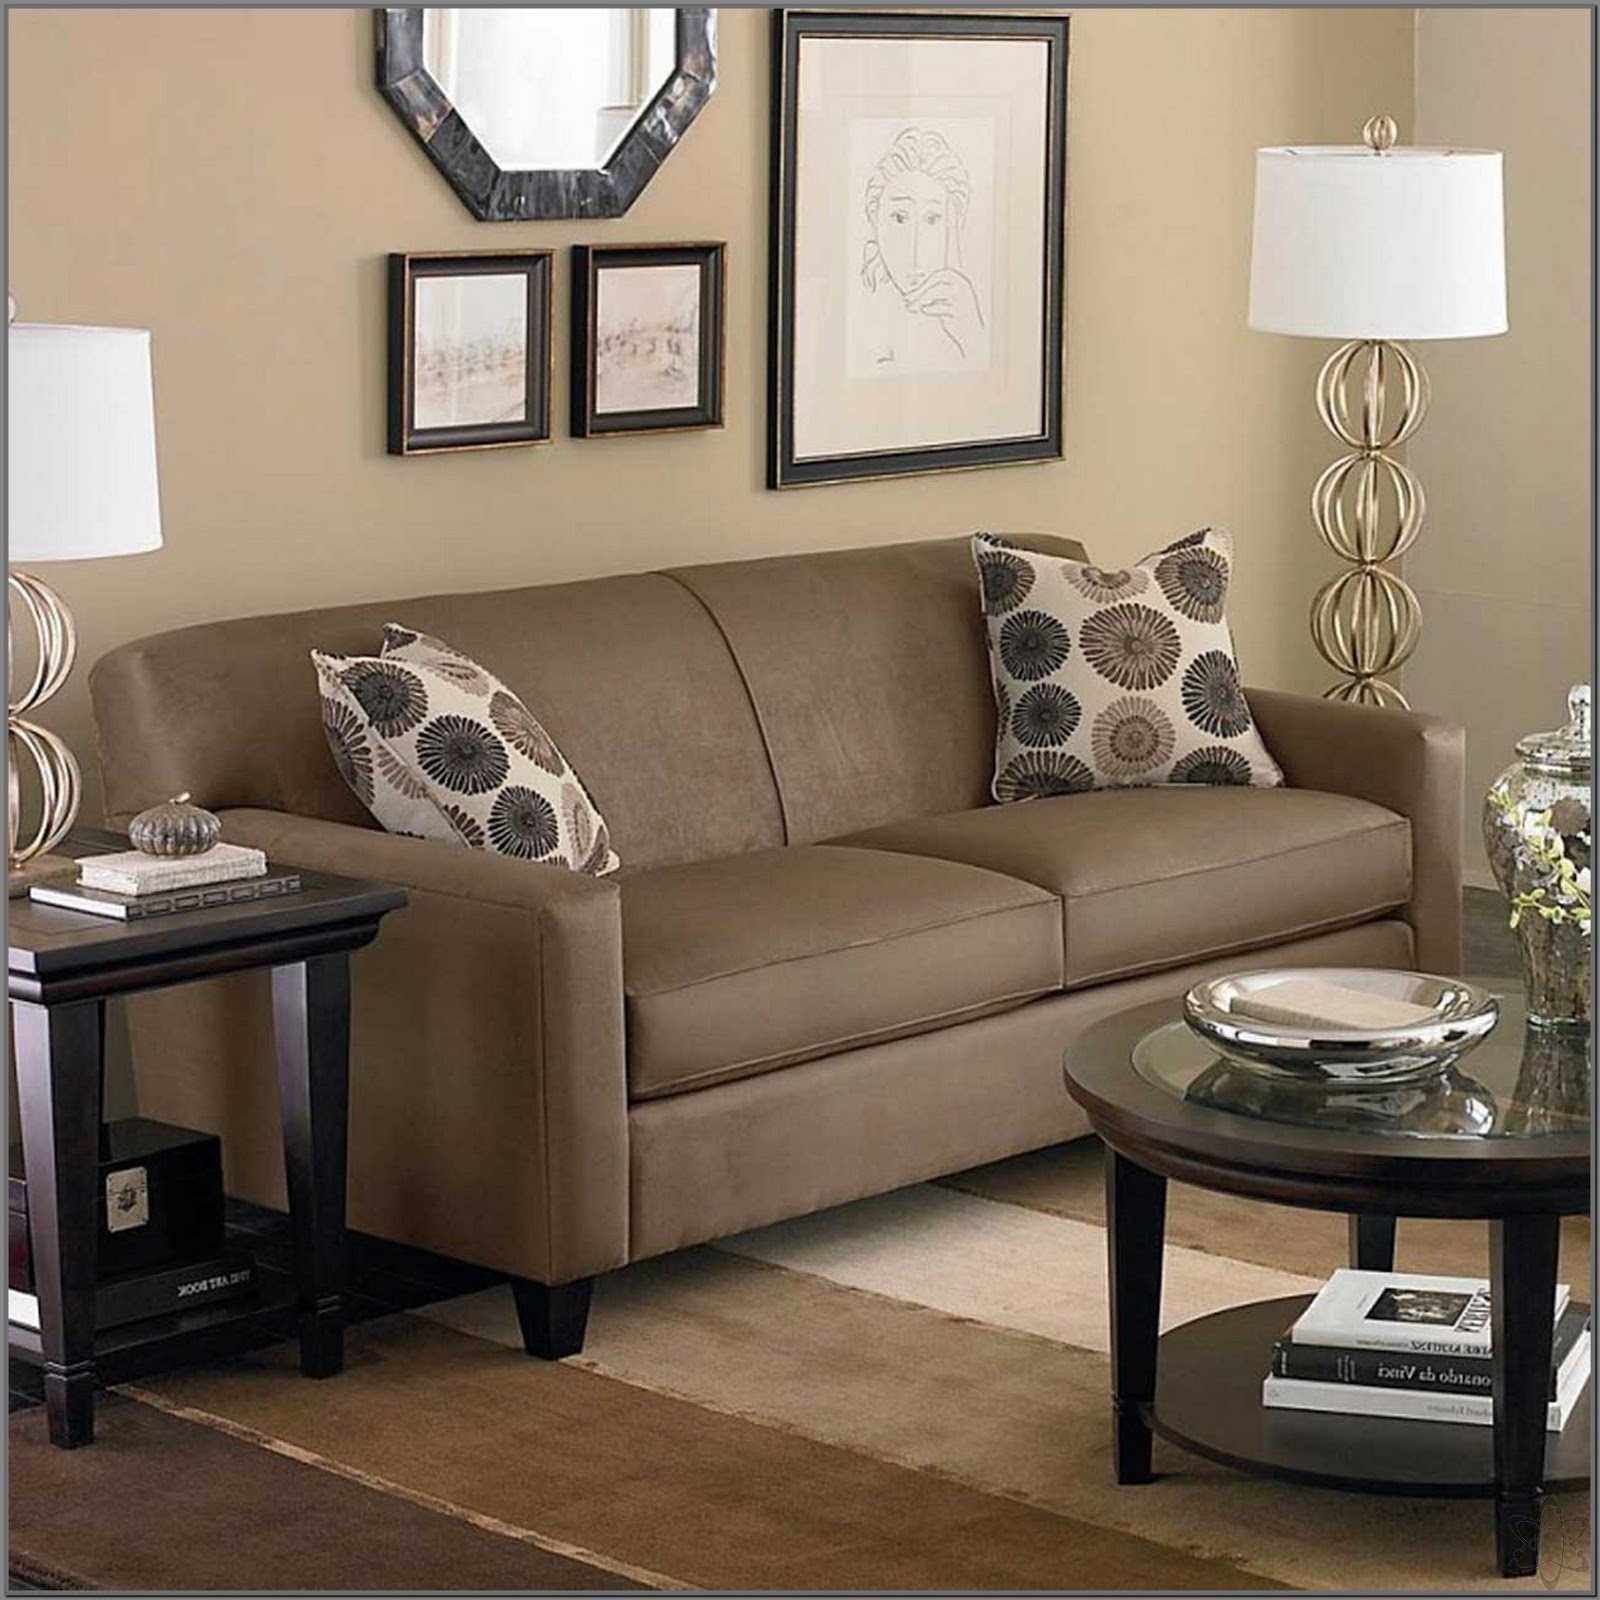 35 Model Gambar Sofa Minimalis  Modern Untuk Ruang  Tamu  Yang Cantik Desainrumahnya com